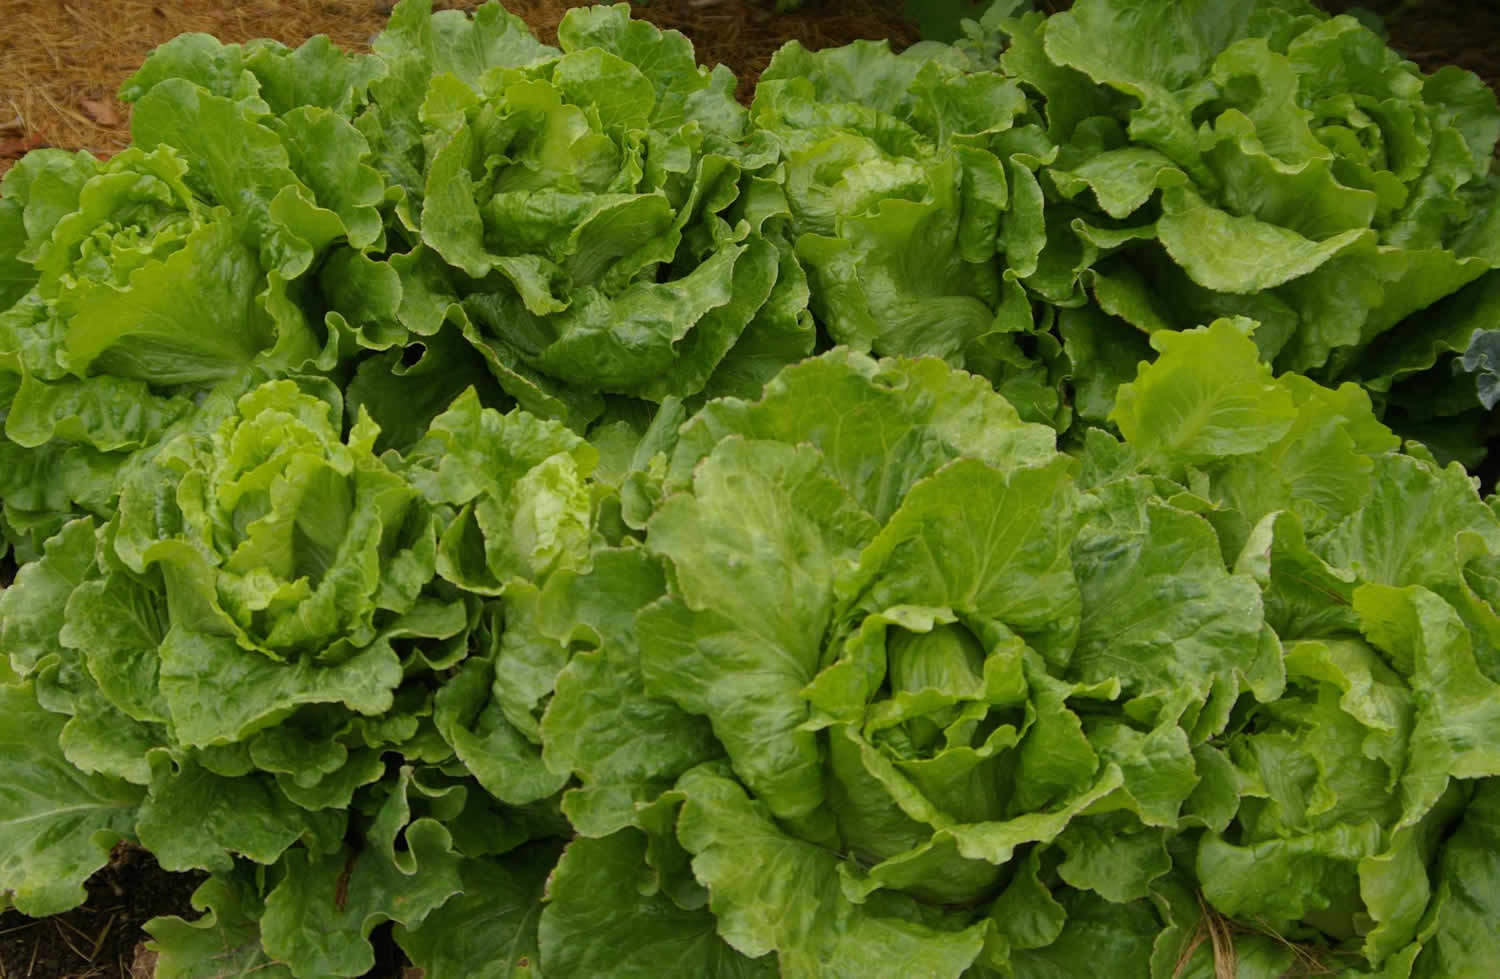 Summer crisp lettuce